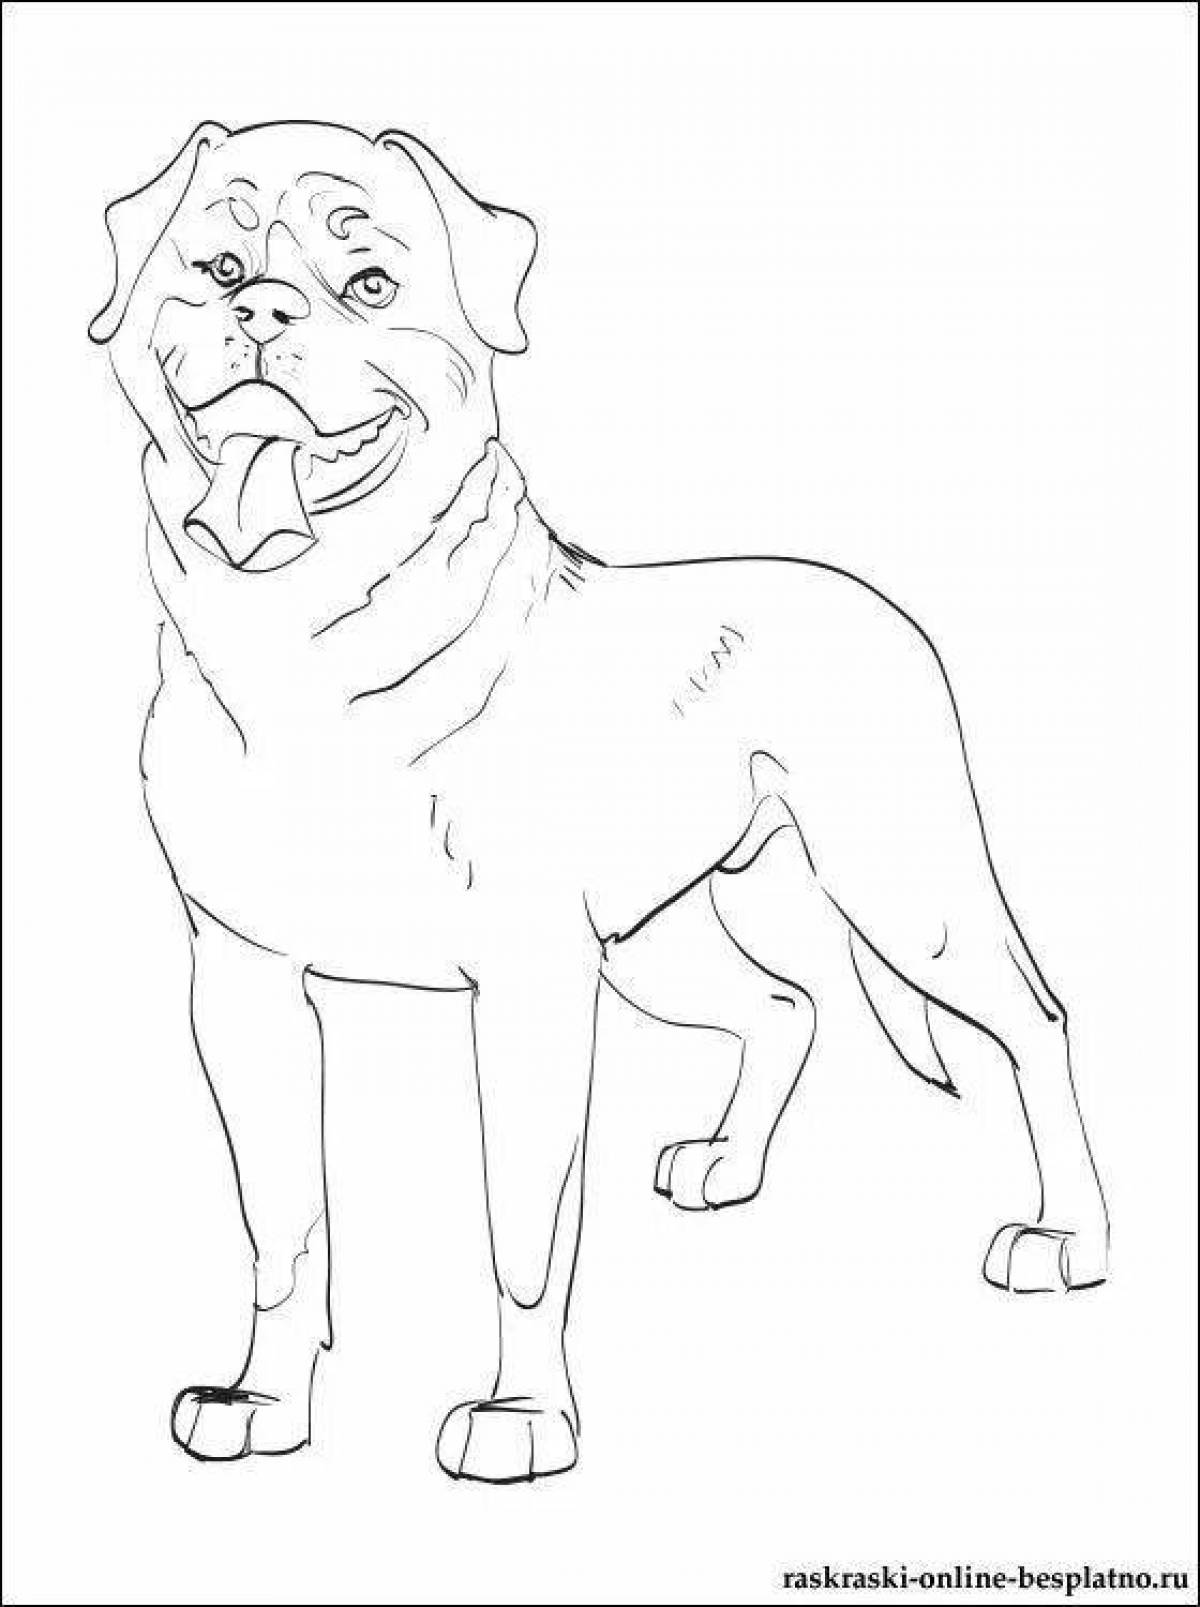 Charming dog alabai coloring book